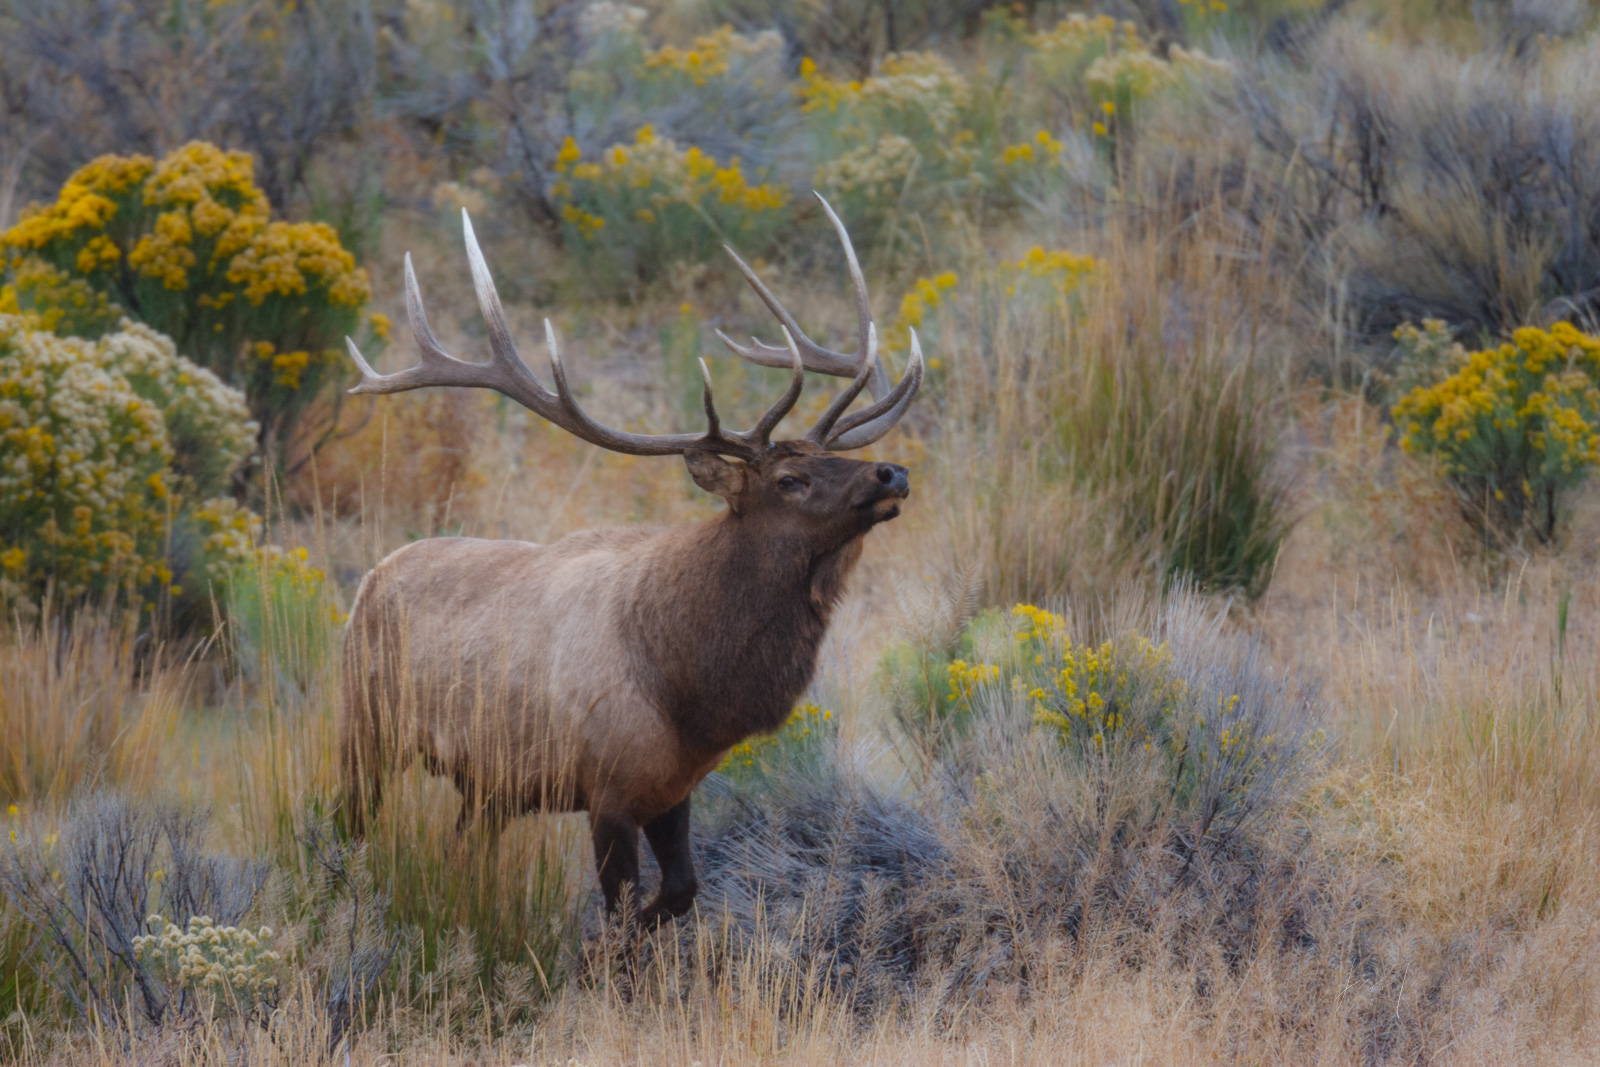 Big Bull Elk in Sagebrush